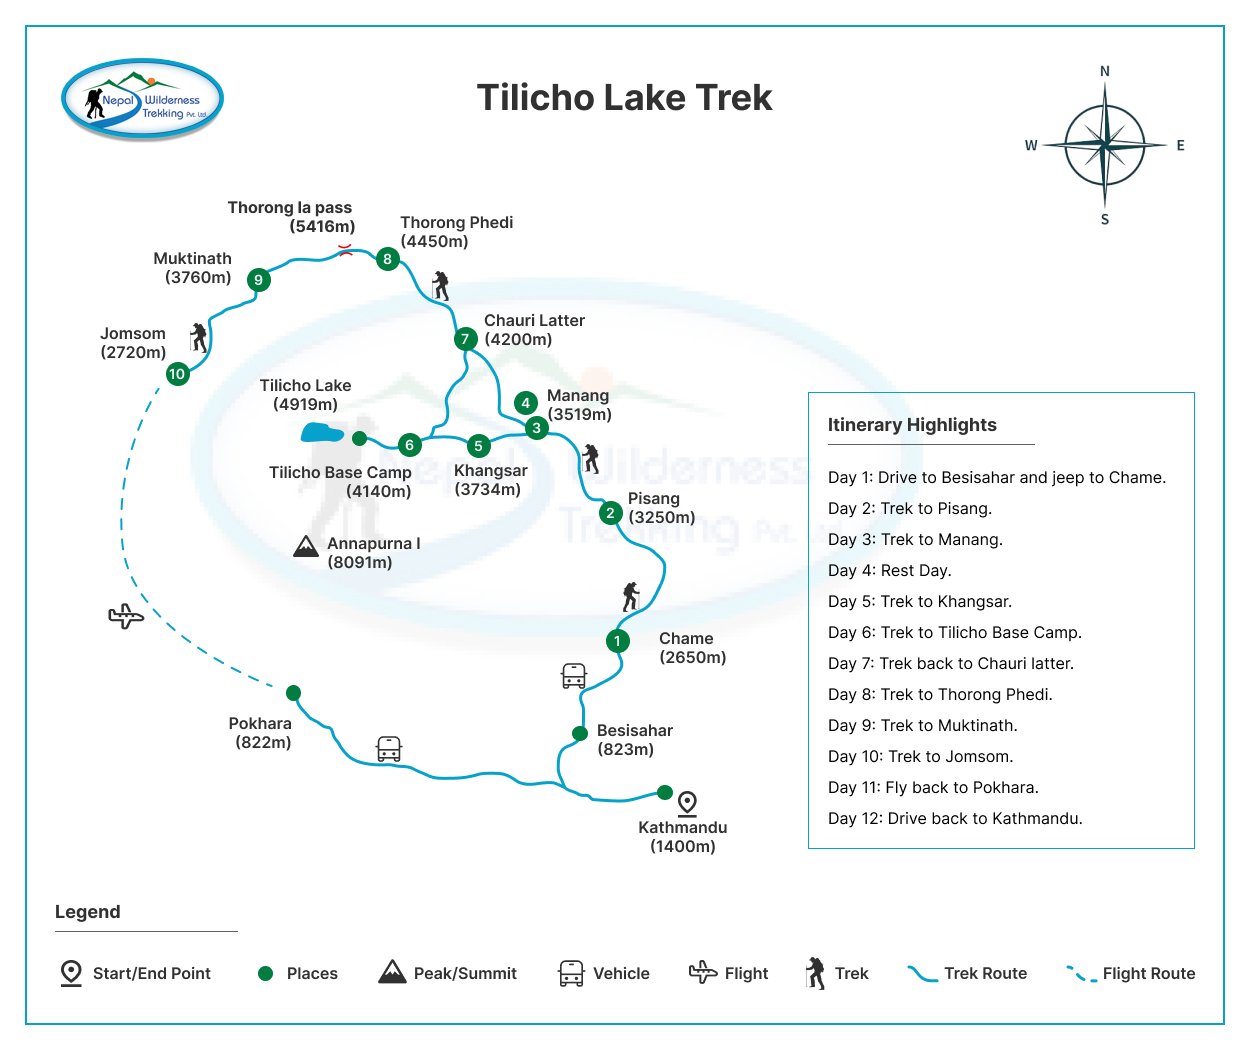 tilicho lake trek map